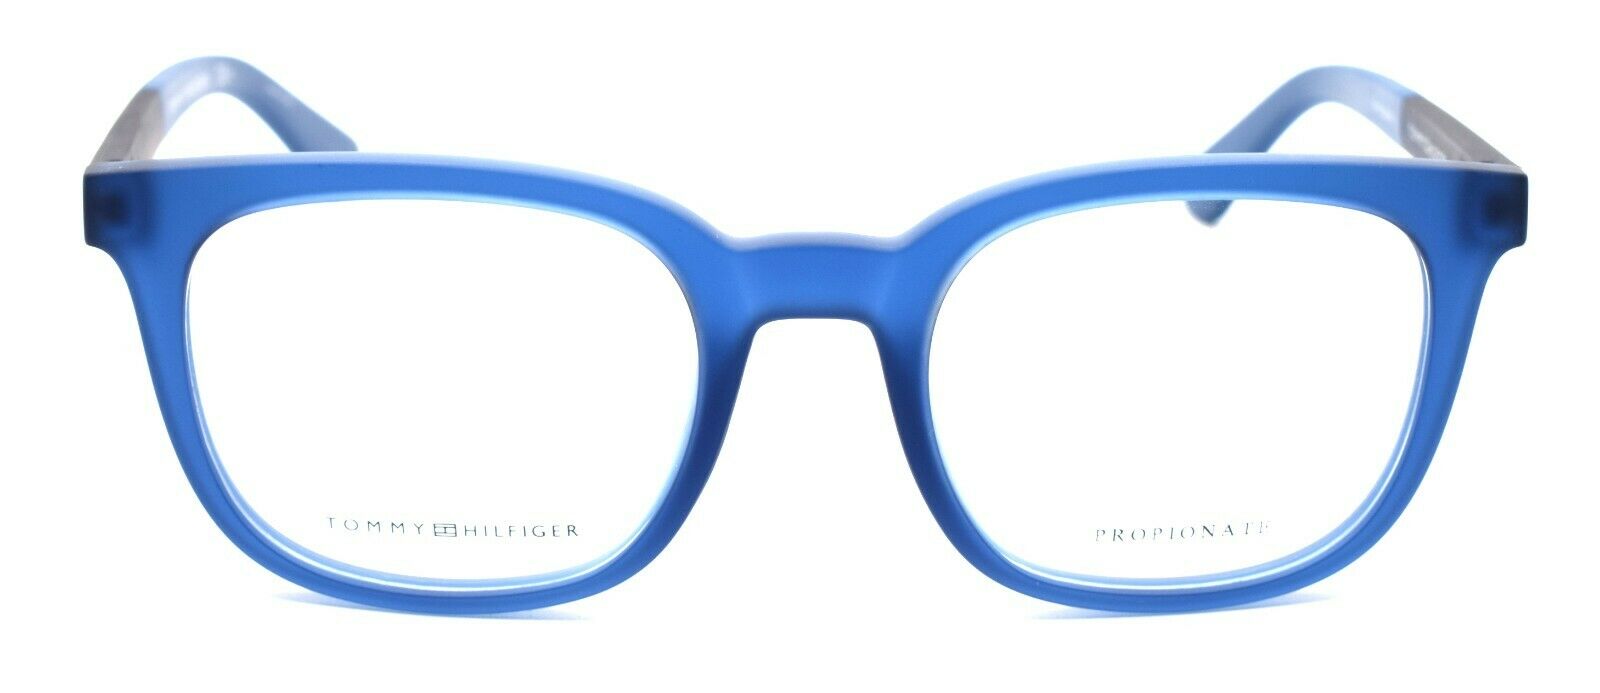 2-TOMMY HILFIGER TH 1477 GEG Men's Eyeglasses Frames 50-21-145 Transparent Blue-762753618115-IKSpecs